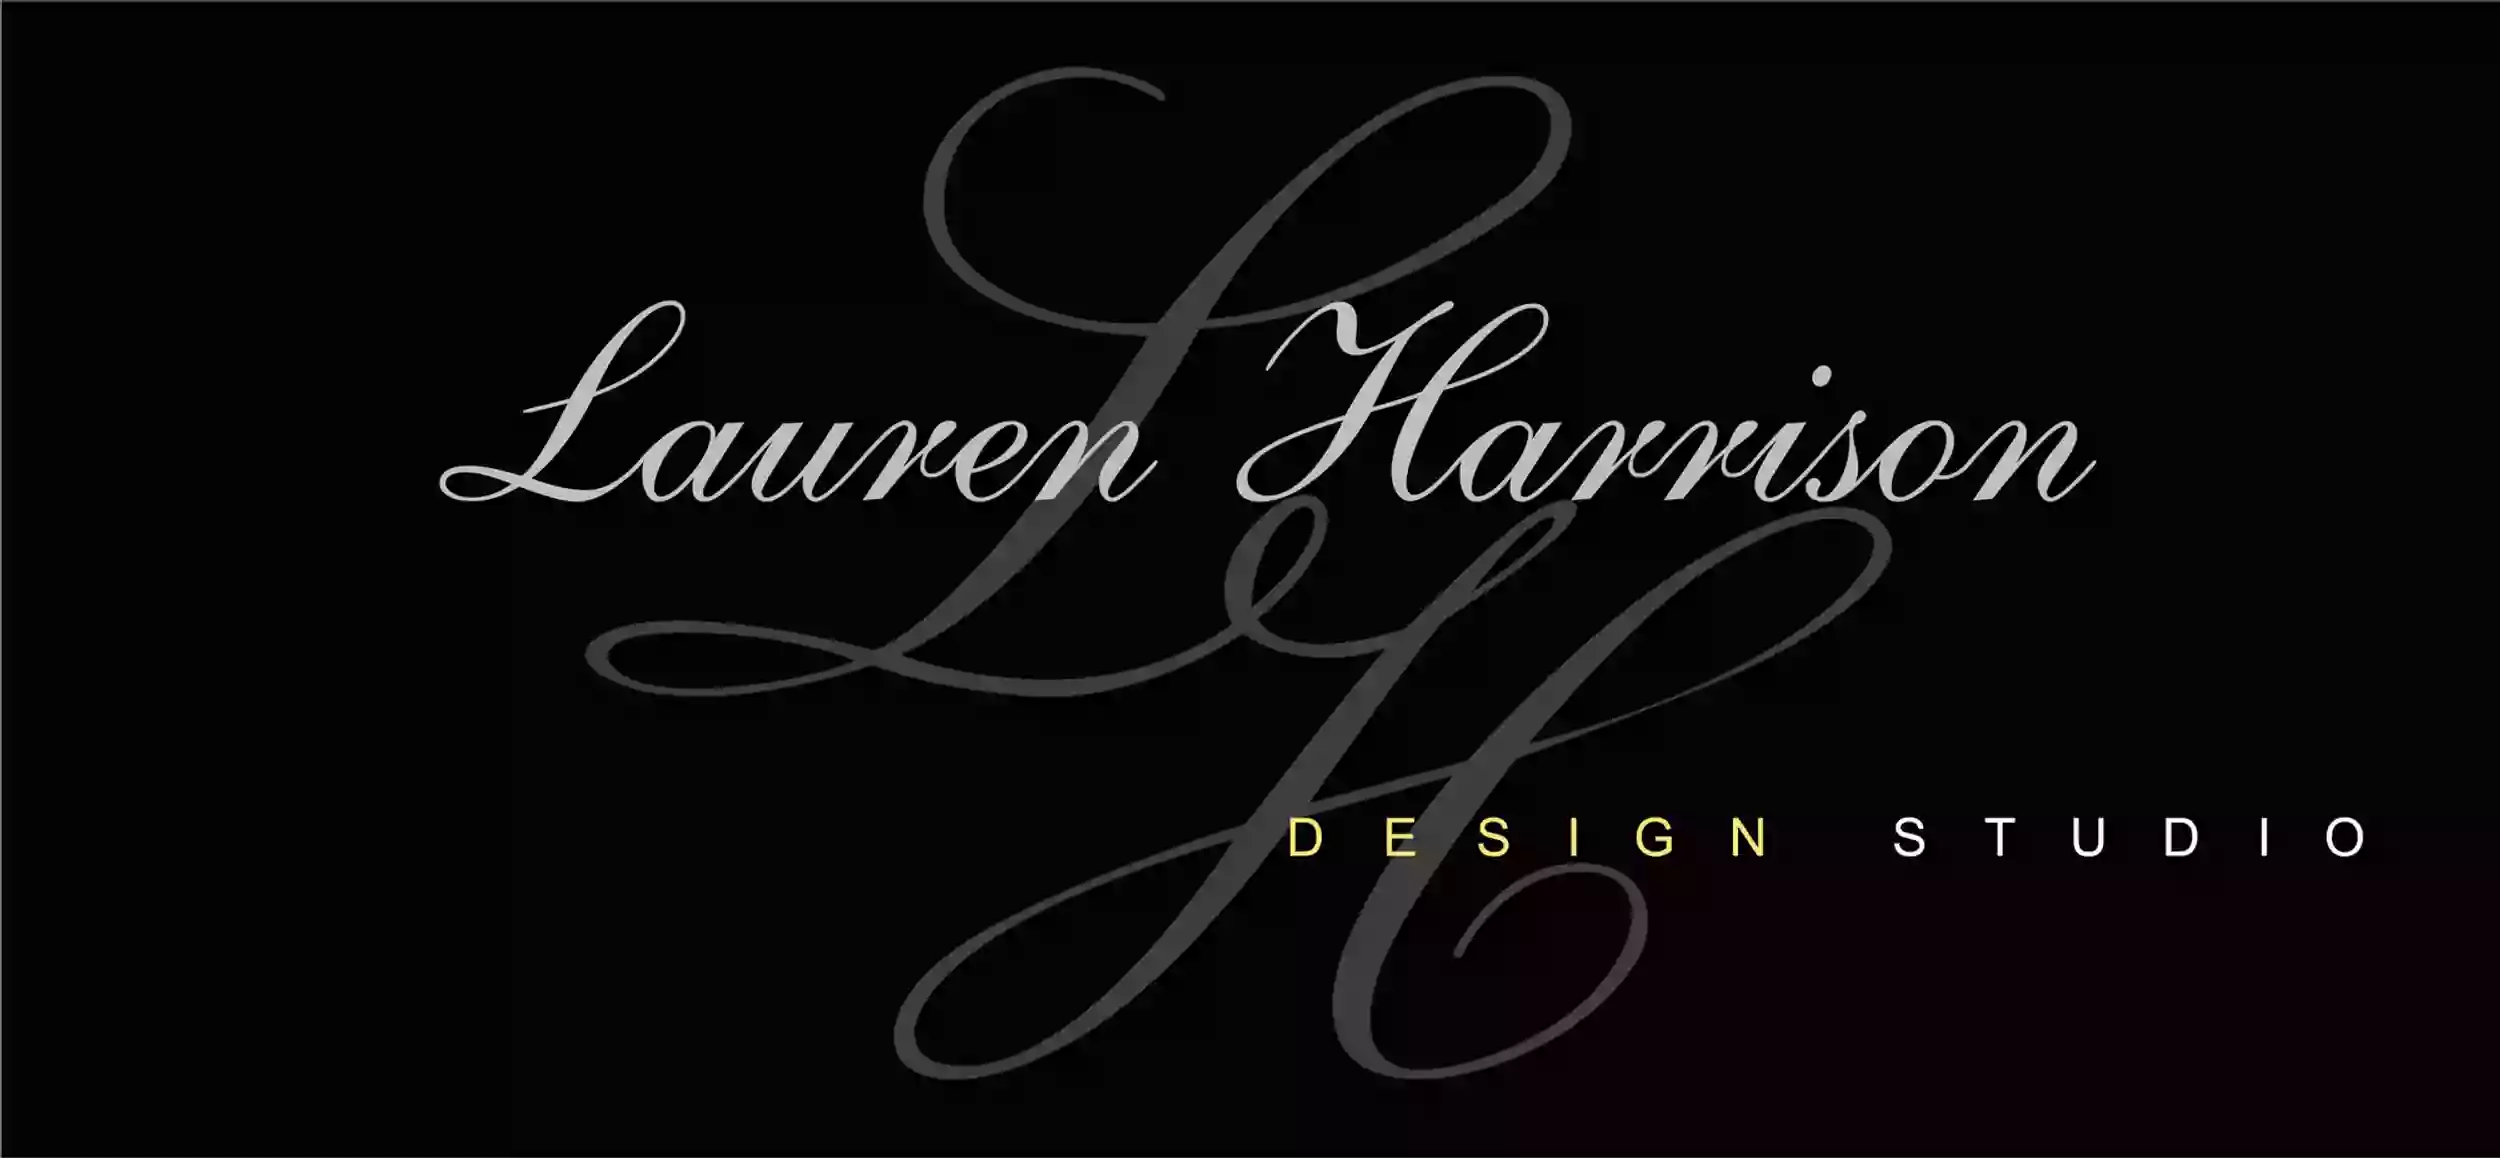 Lauren Harrison Design Studio